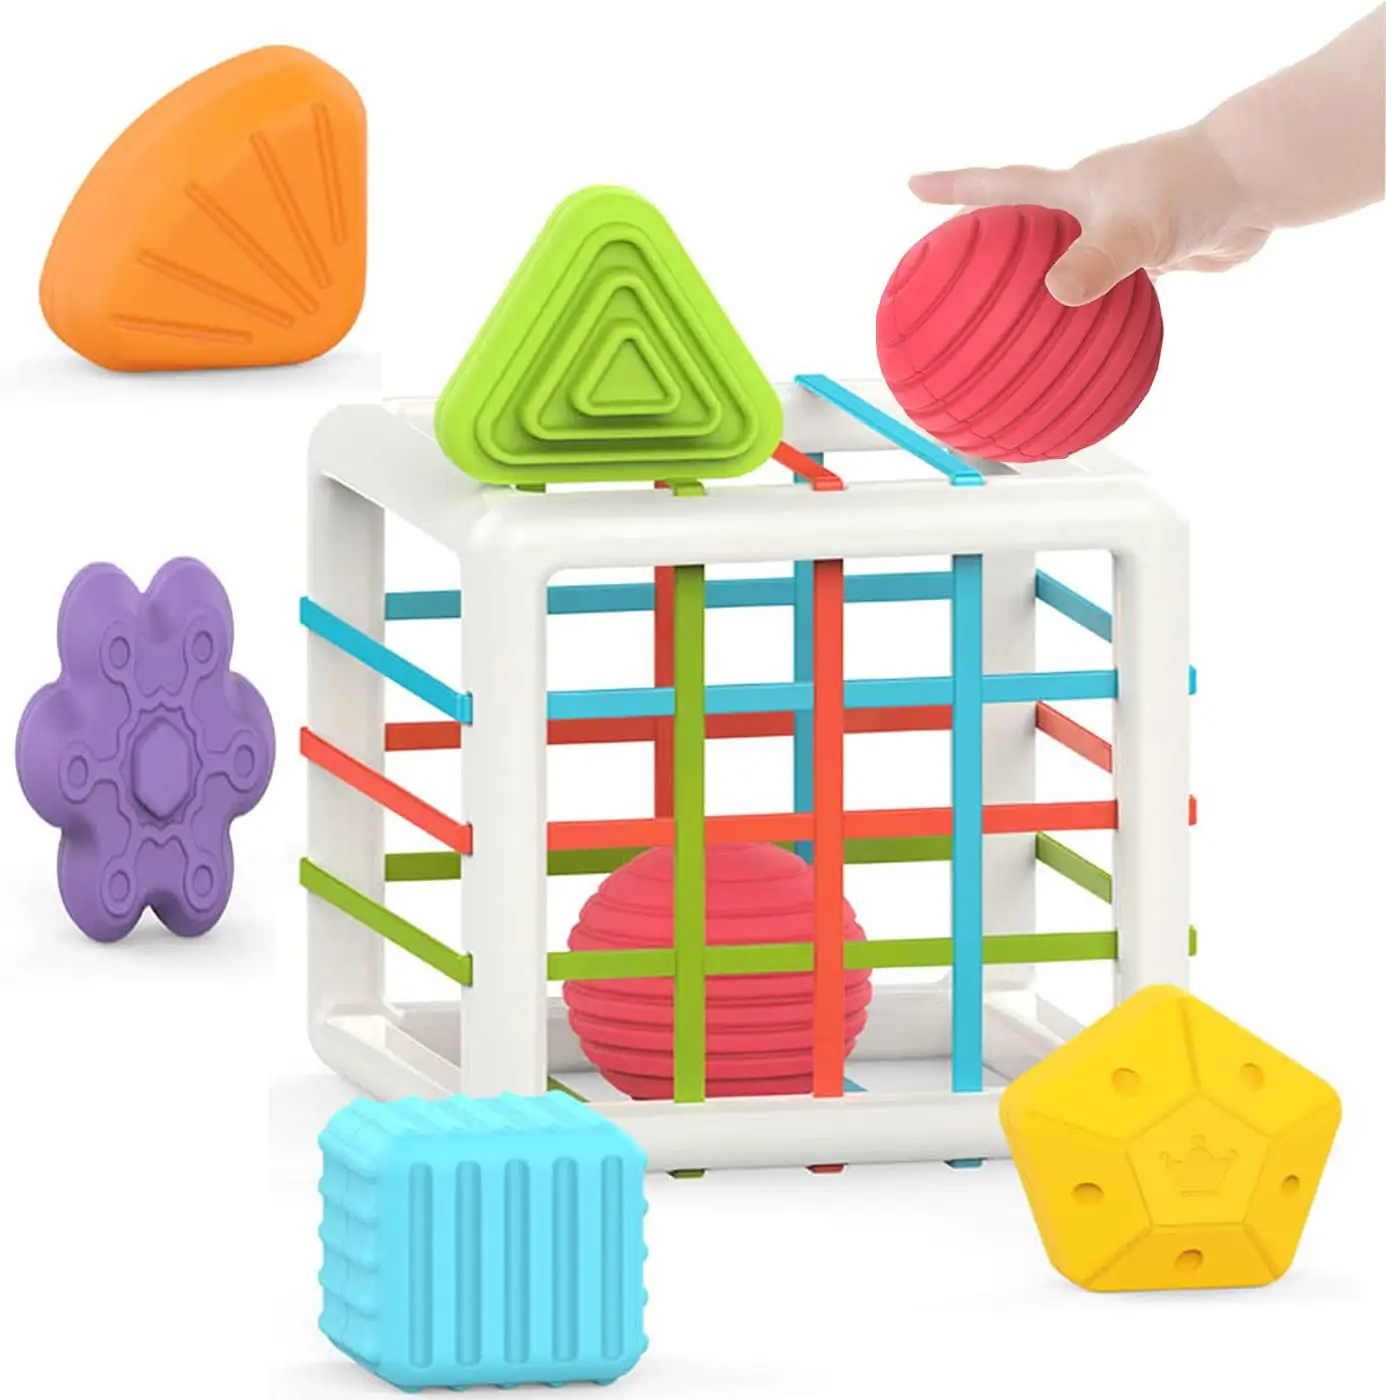 ของเล่นแบบมอนเตสซอรี่สำหรับเด็กอายุ1ปี,ของเล่นปริศนาลูกบาศก์หลากสีและ6ชิ้นของเล่นเพื่อพัฒนาการทางประสาทสัมผัสรูปทรงต่างๆ